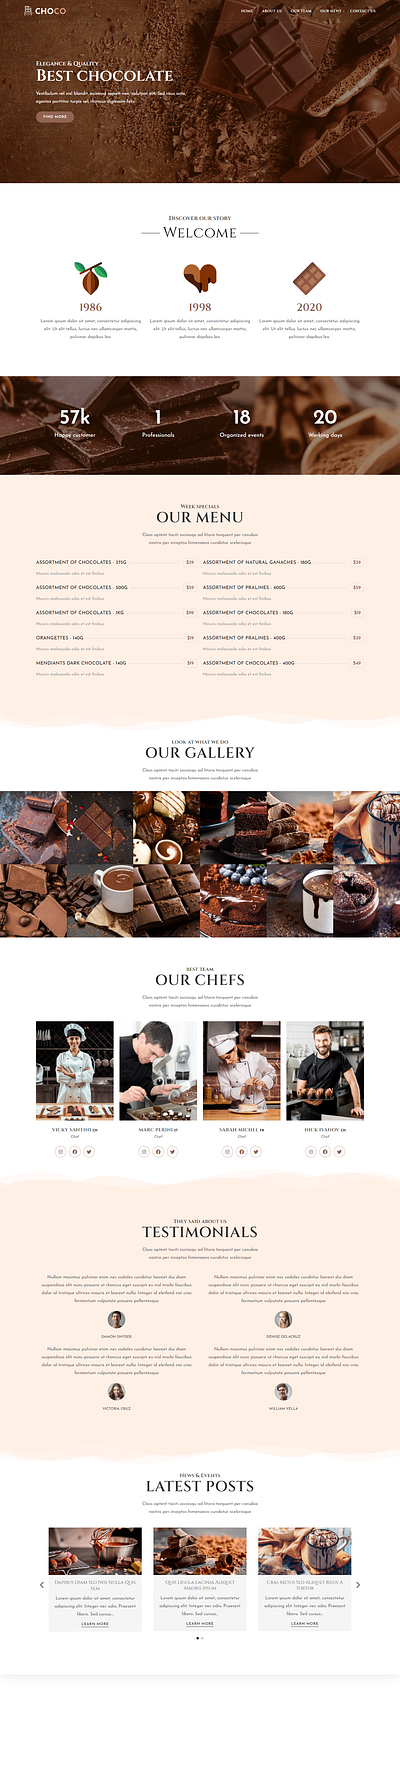 CHOCO Chocolate Website. choco chocolate website wordpress website